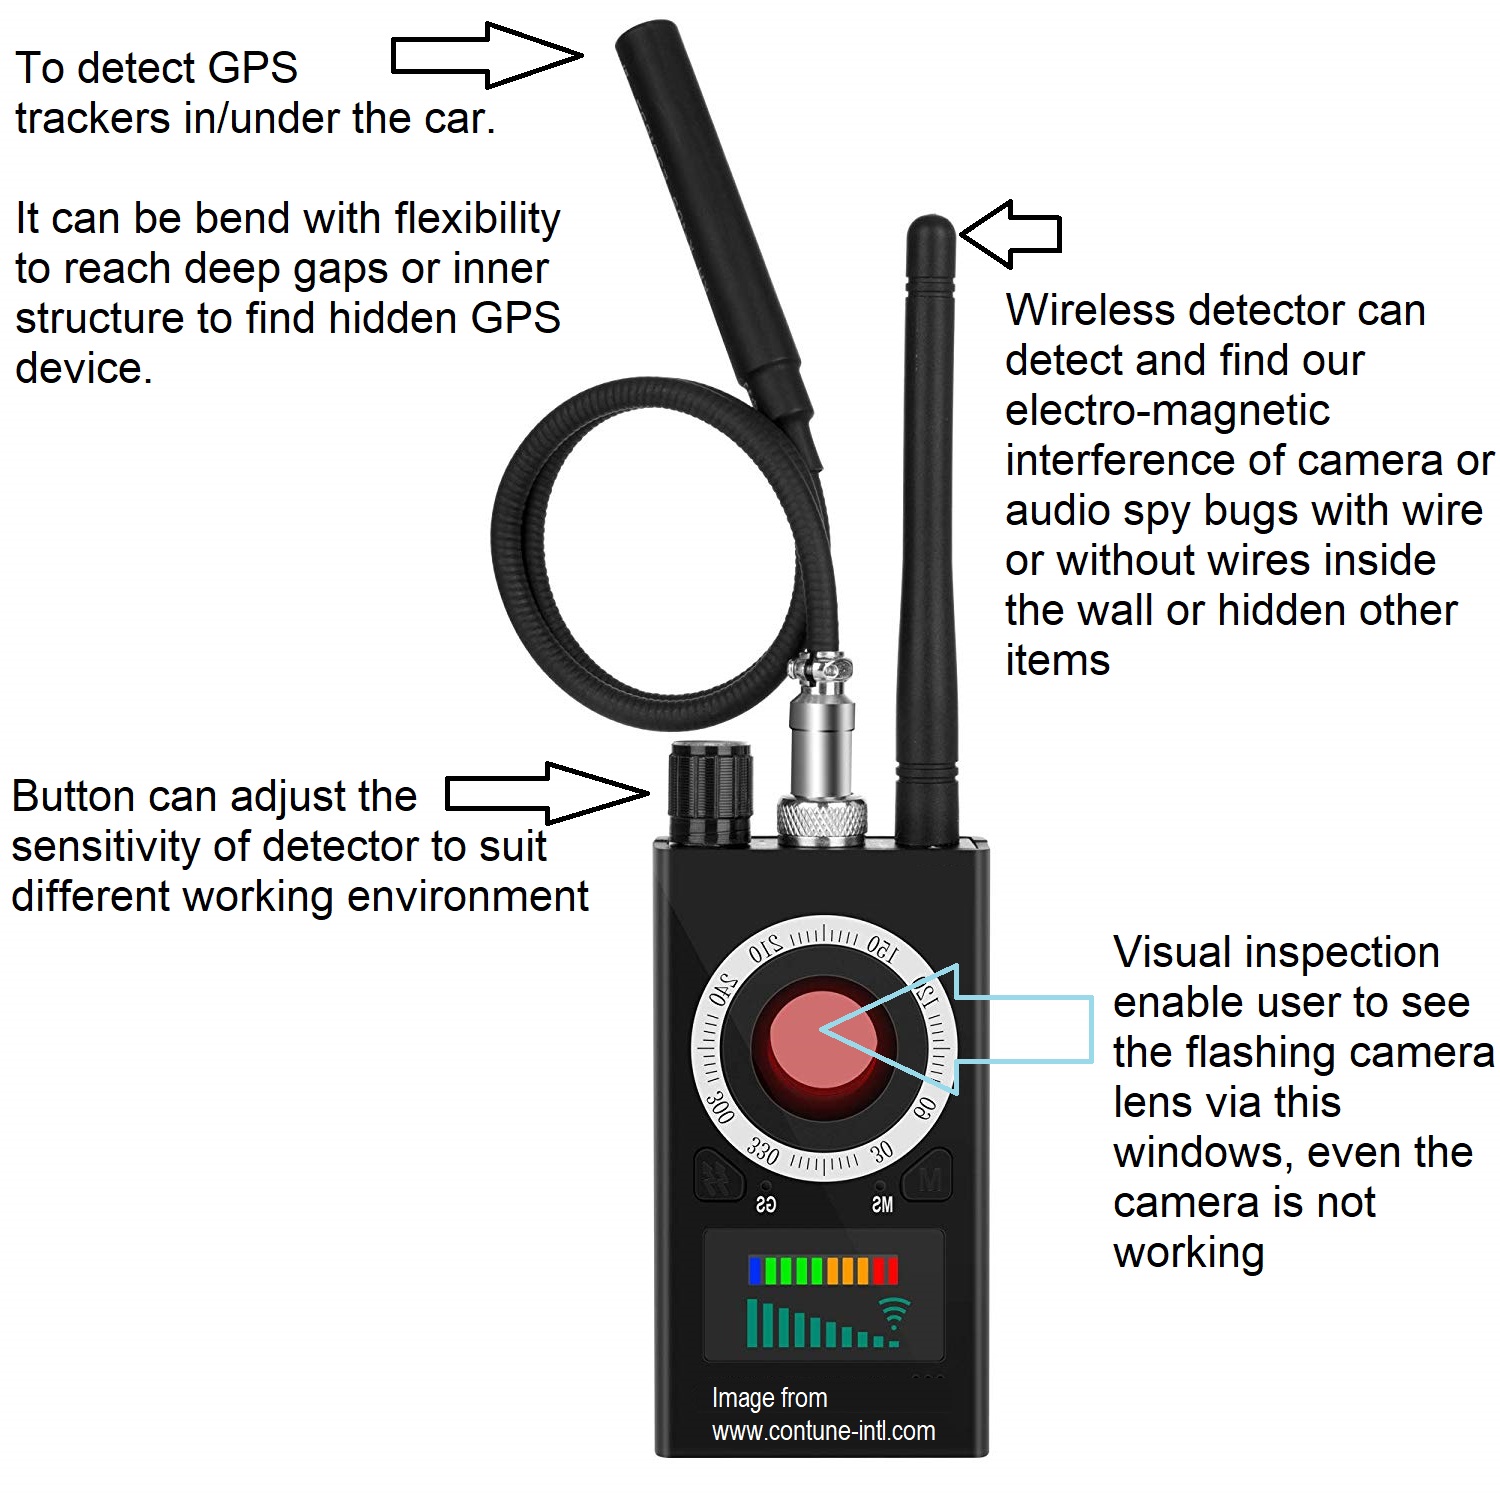 Détecteur Anti Spy pour caméra cachée, trackers GPS | ContuneINTL